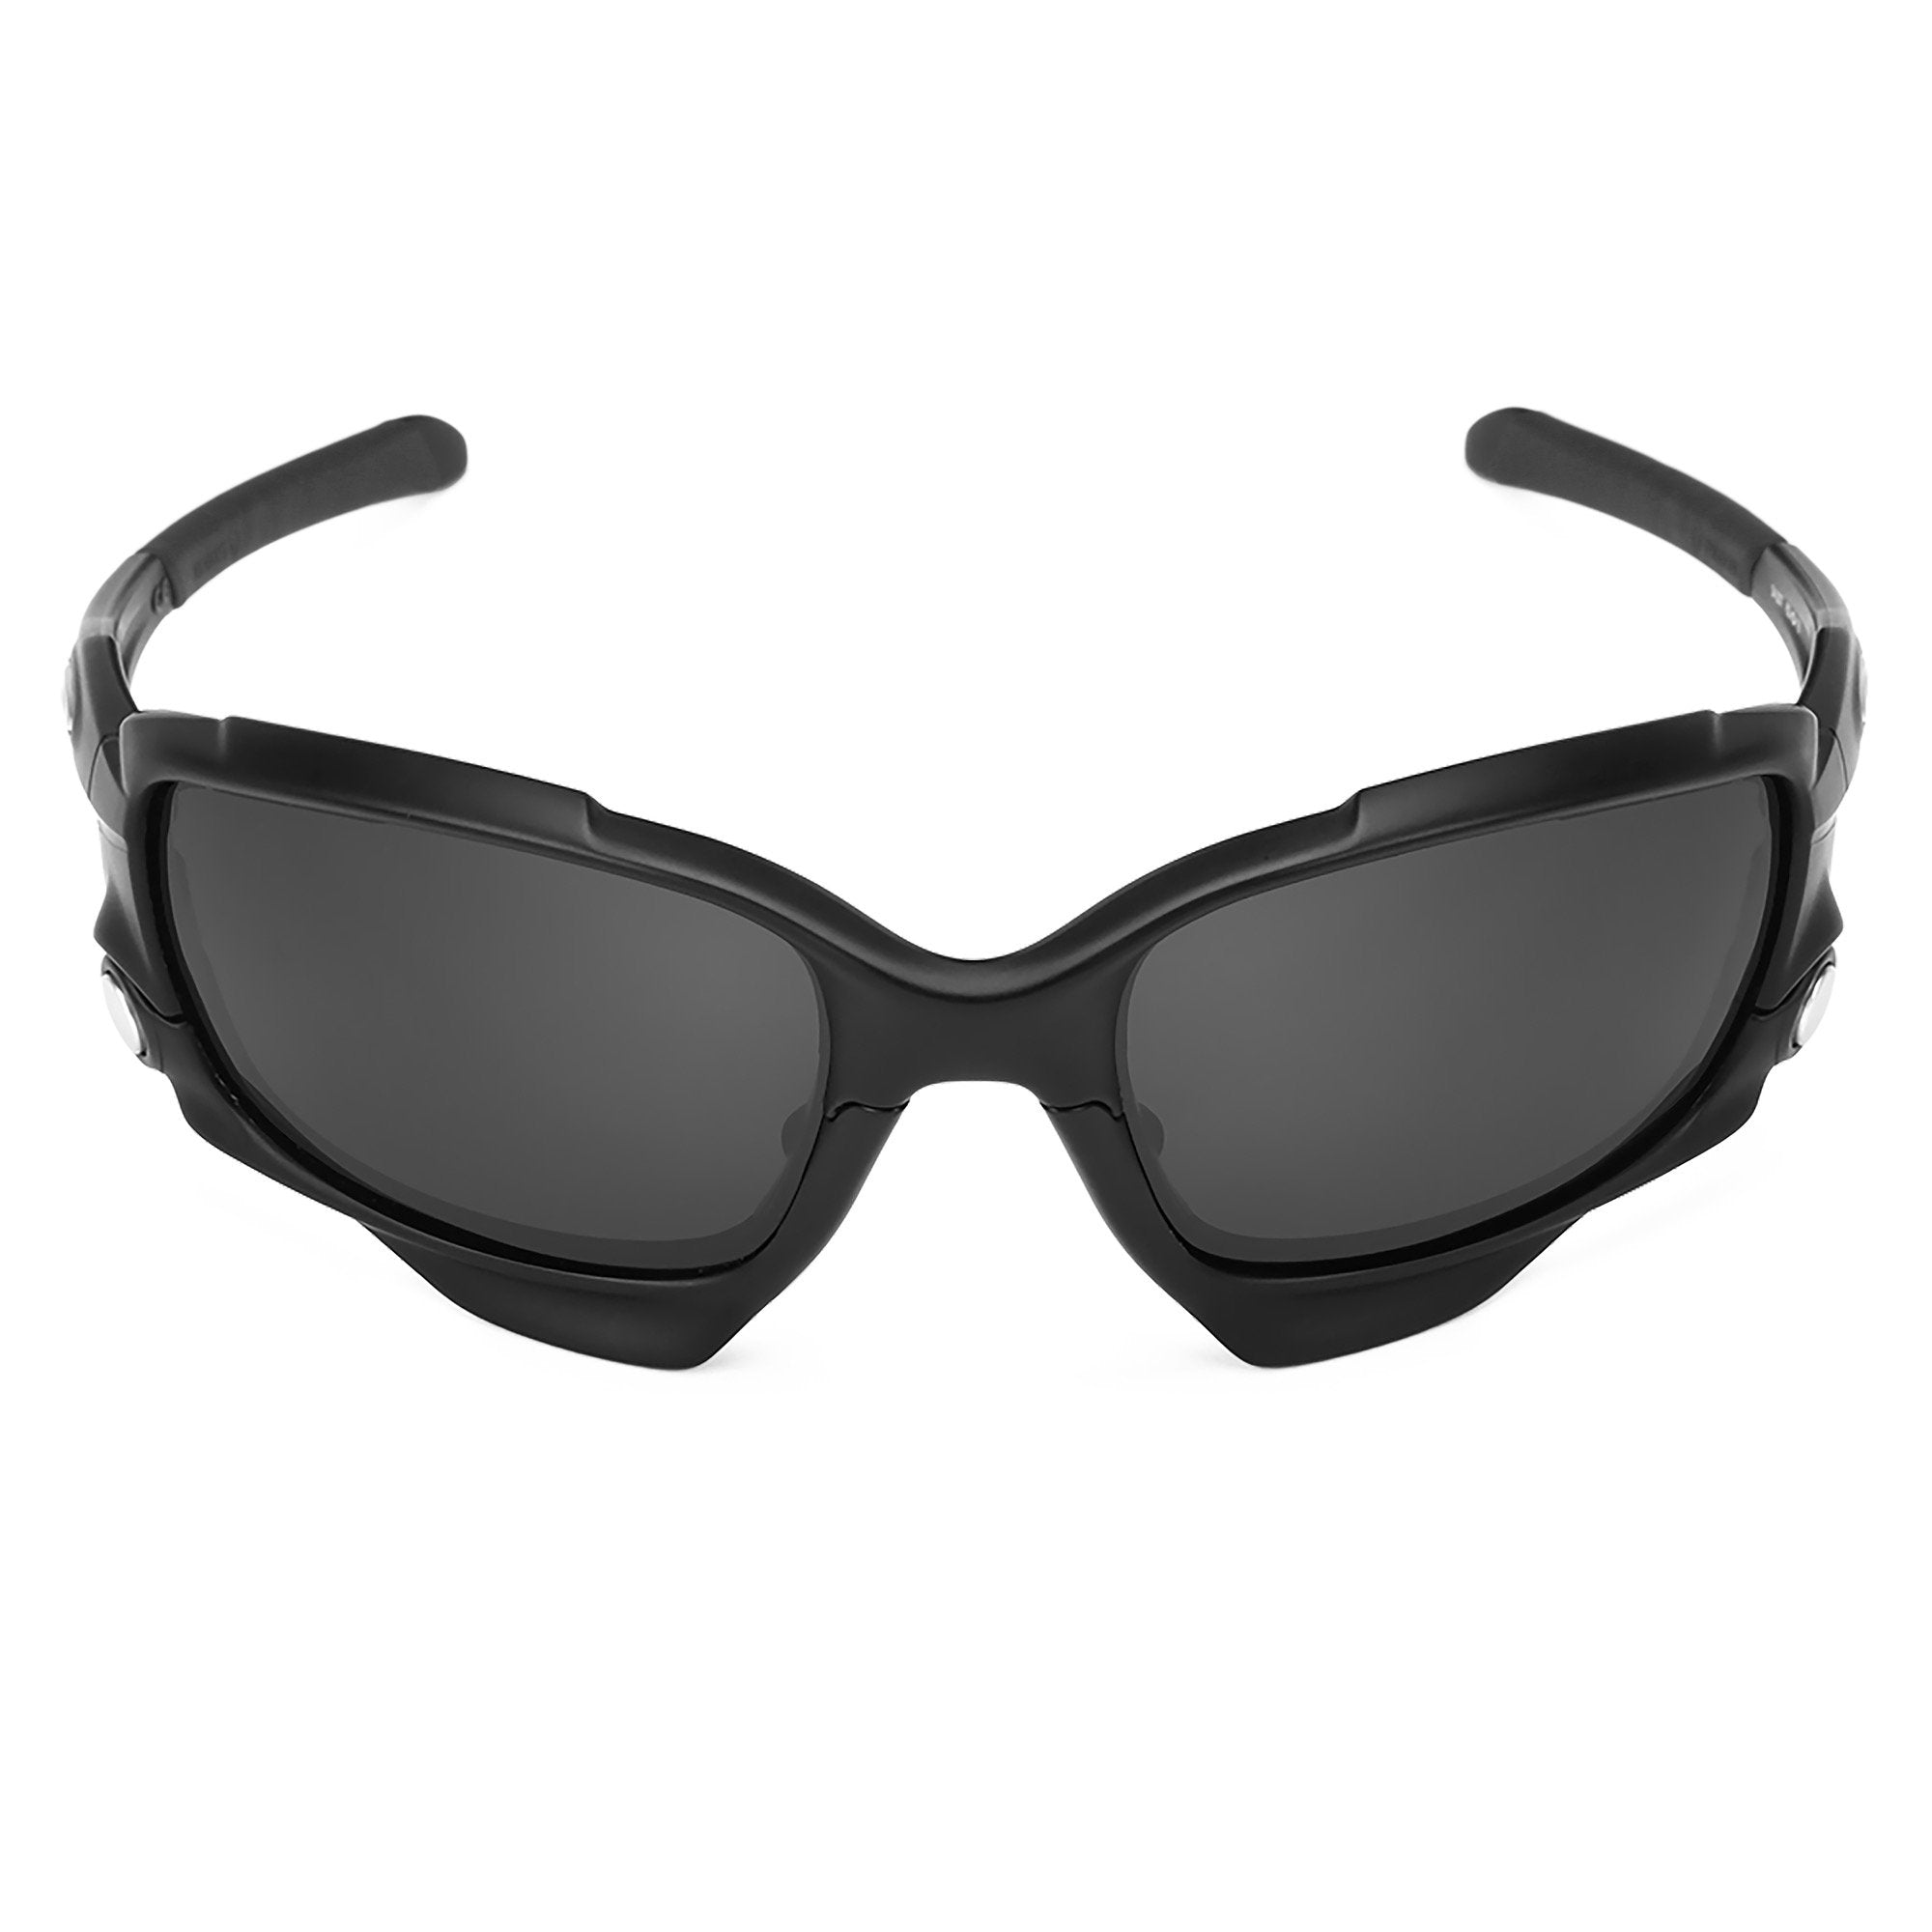 Revant black rubber kit installed on Oakley Jawbone sunglasses